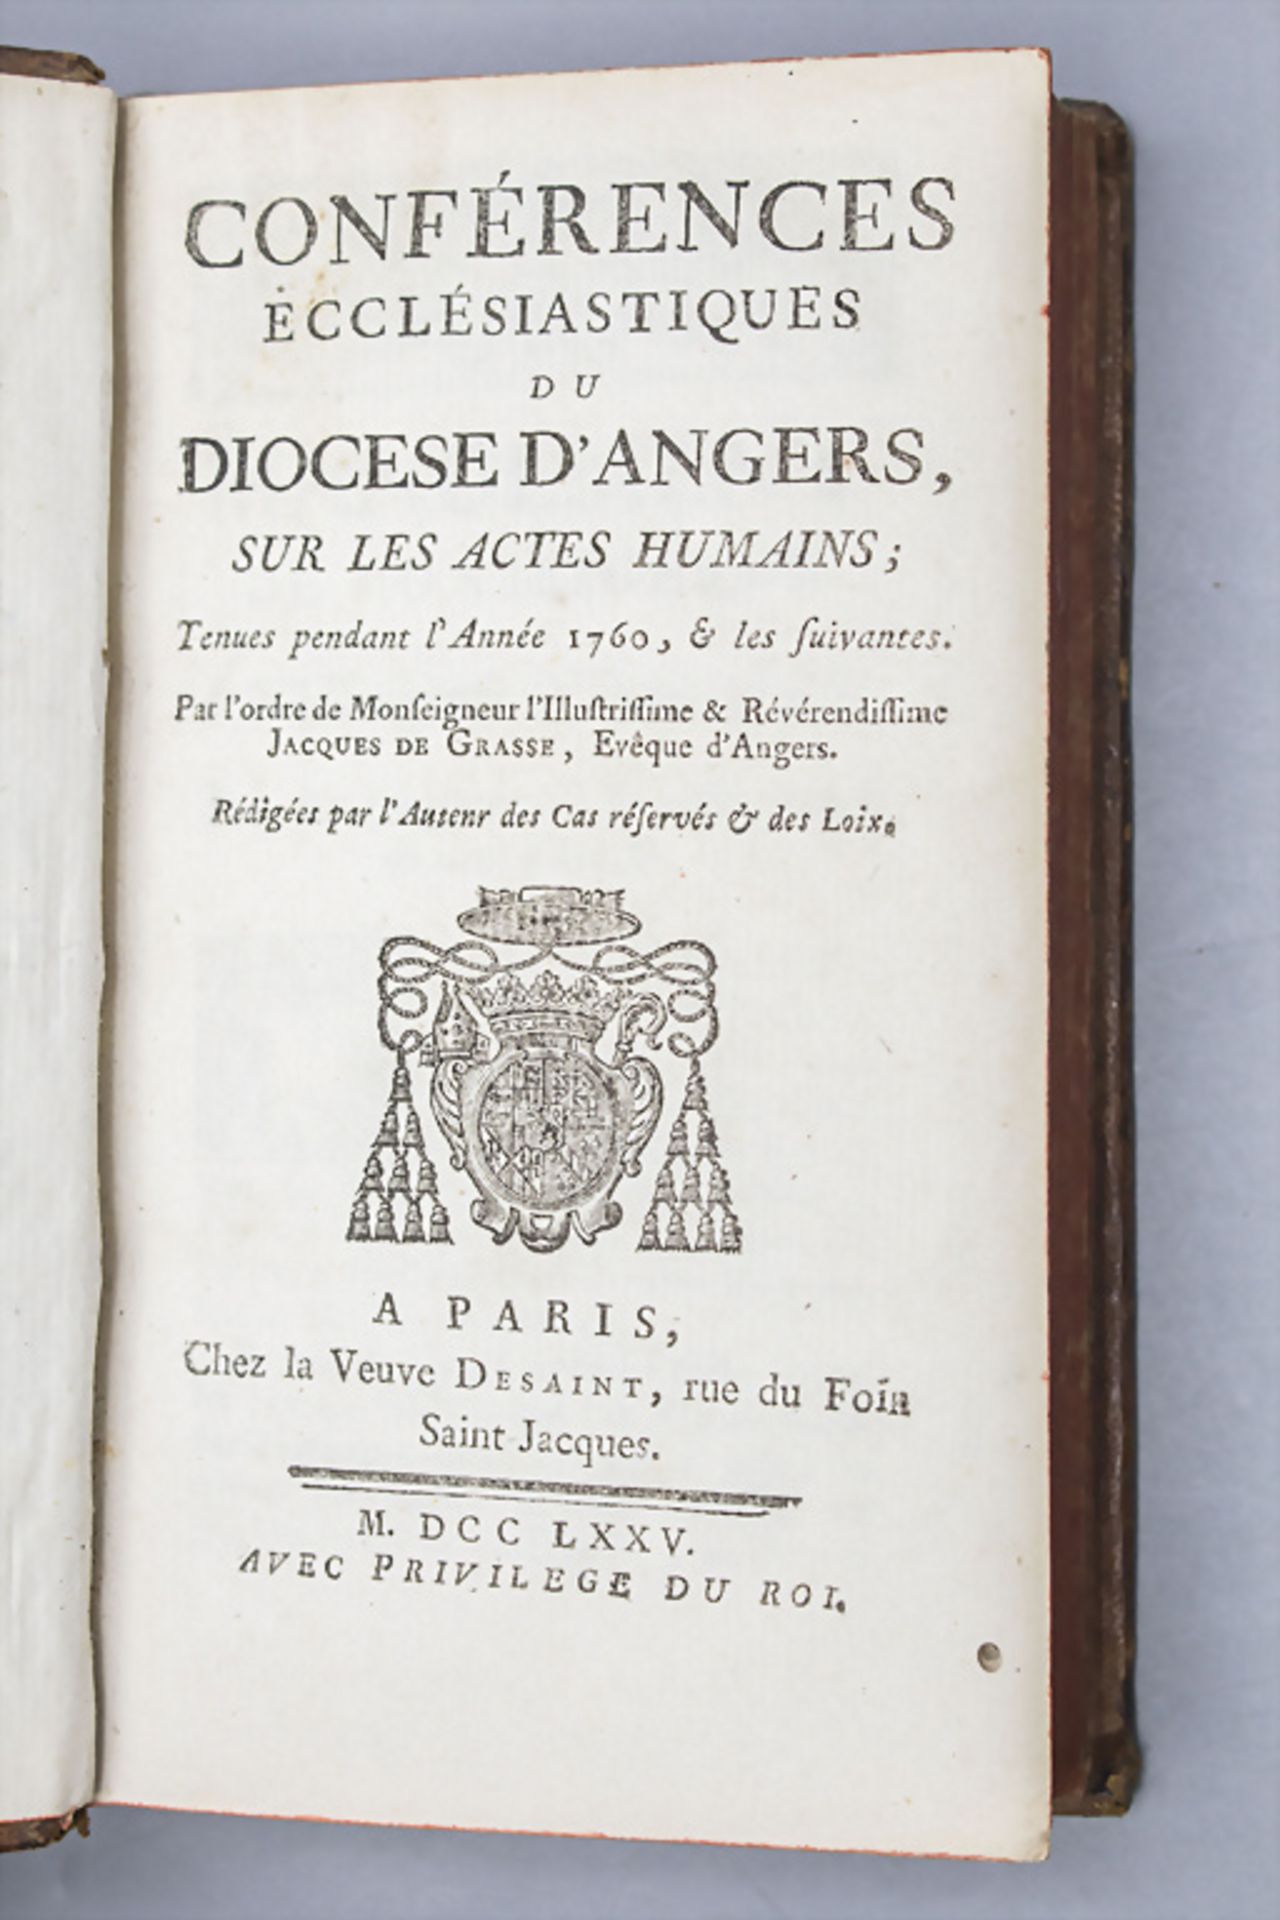 Conferences Ecclésiastiques du Diocese d'Angers sur les Actes Humains, 1775